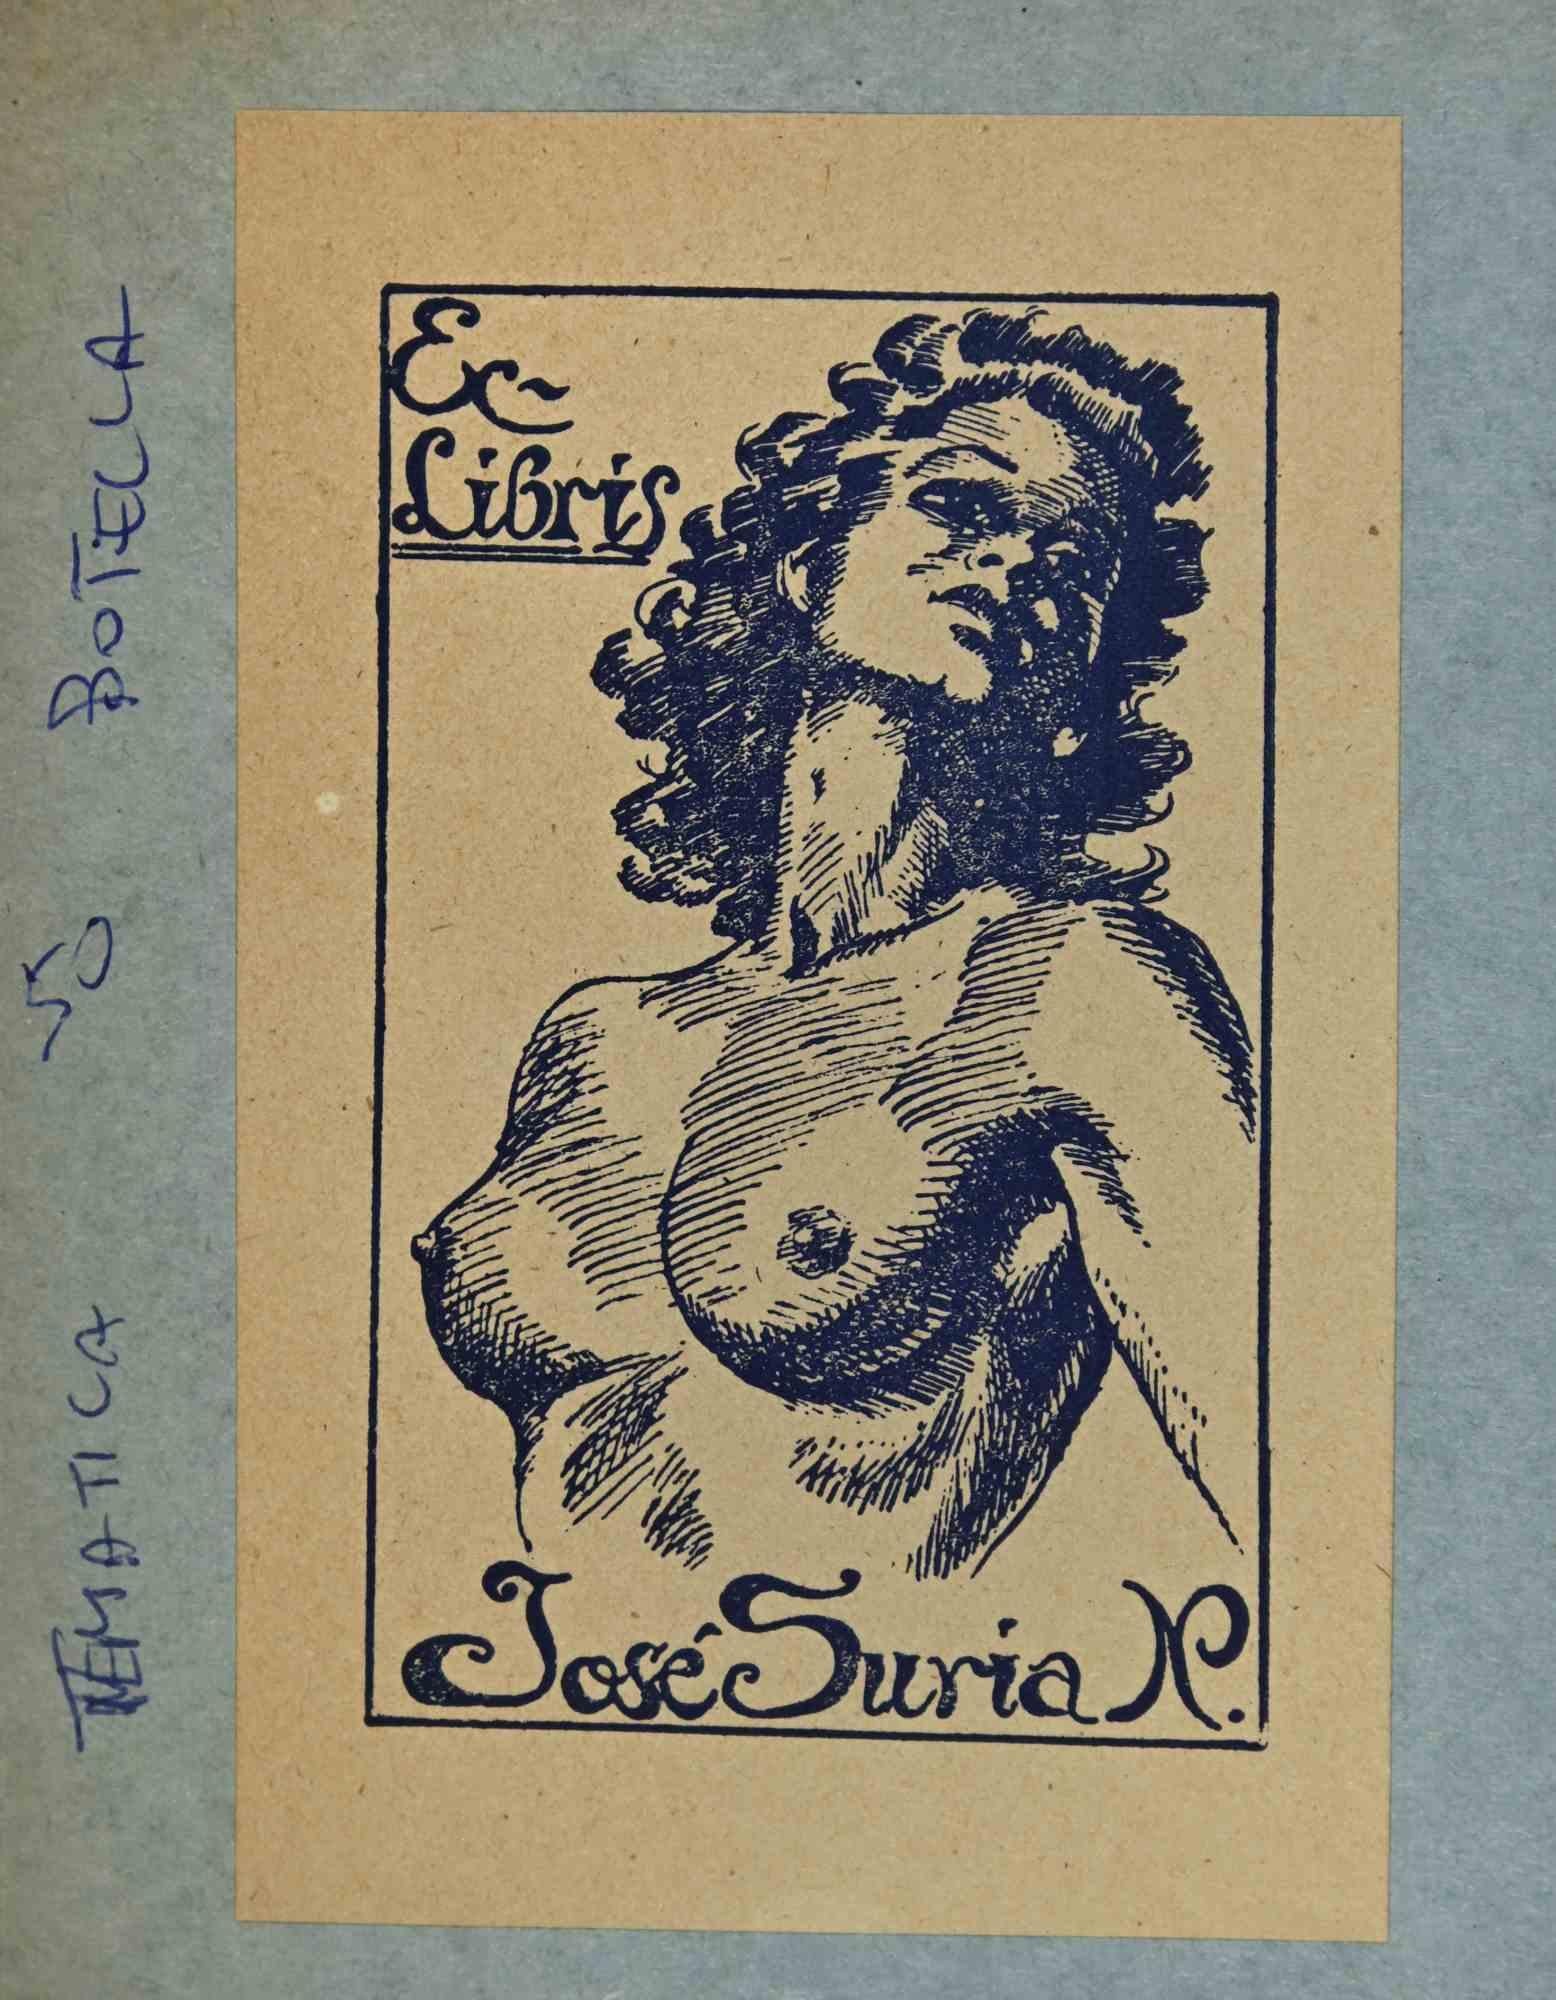 Ex-Libris  - Jose Suria - gravure sur bois - milieu du 20e siècle